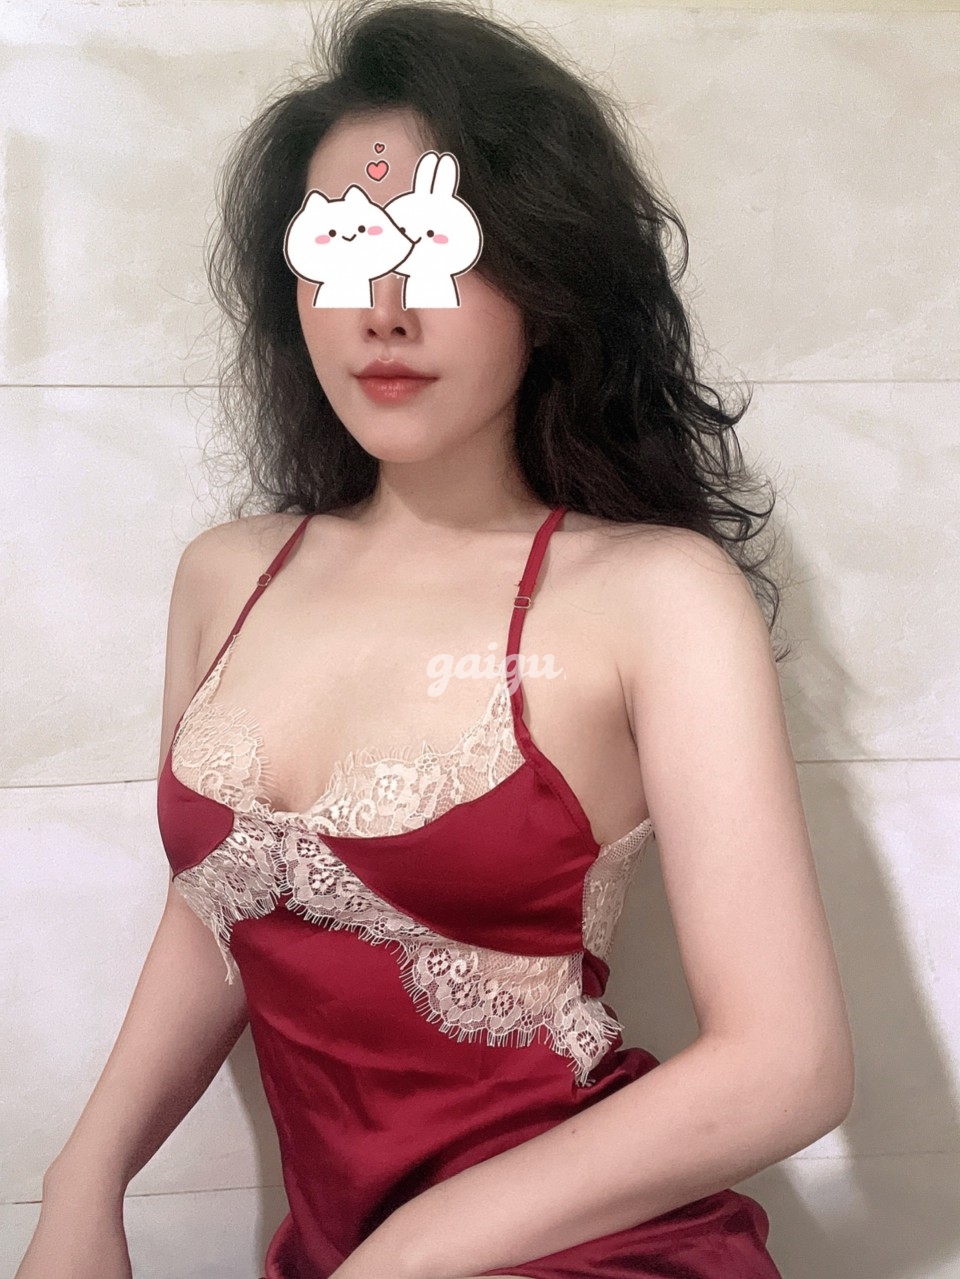 910592 - TIỂU VY Dâm Xinh Lai Tây Body Sexy Tình Cảm Đắm Say Cưng Xỉu